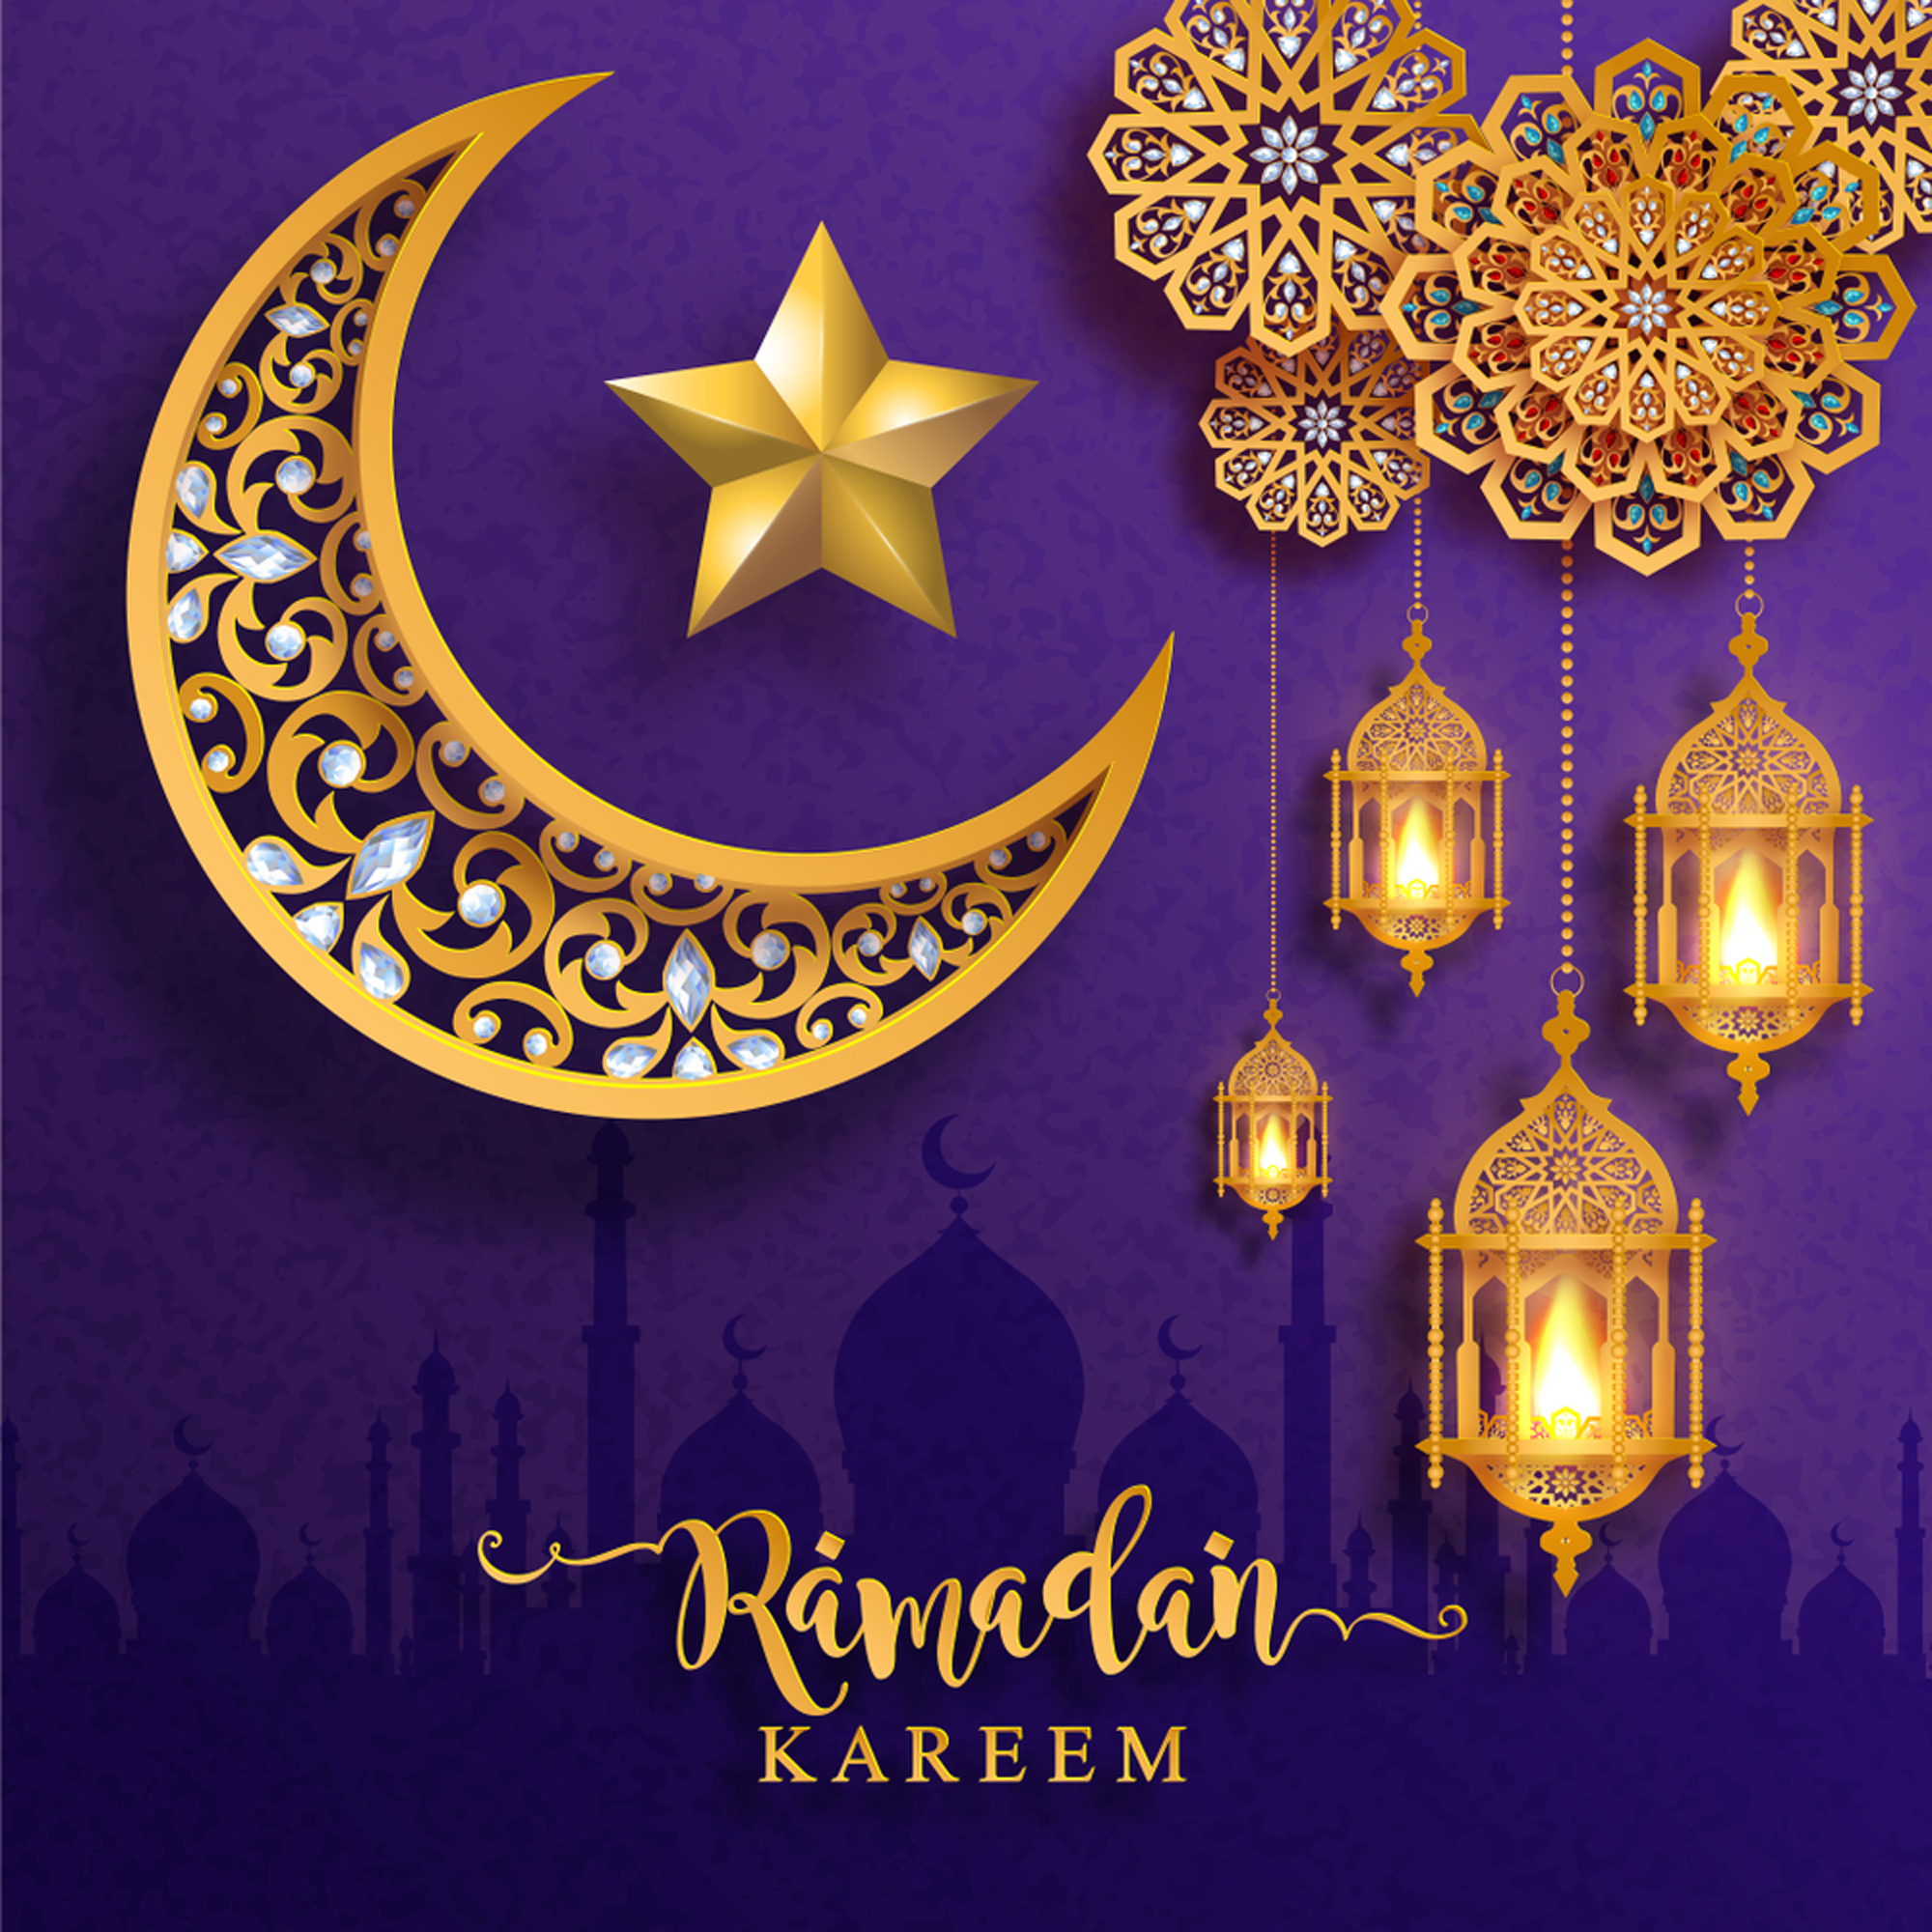 Ramadan kareem. Ramadan mubarak wallpaper, Ramadan wishes, Ramadan